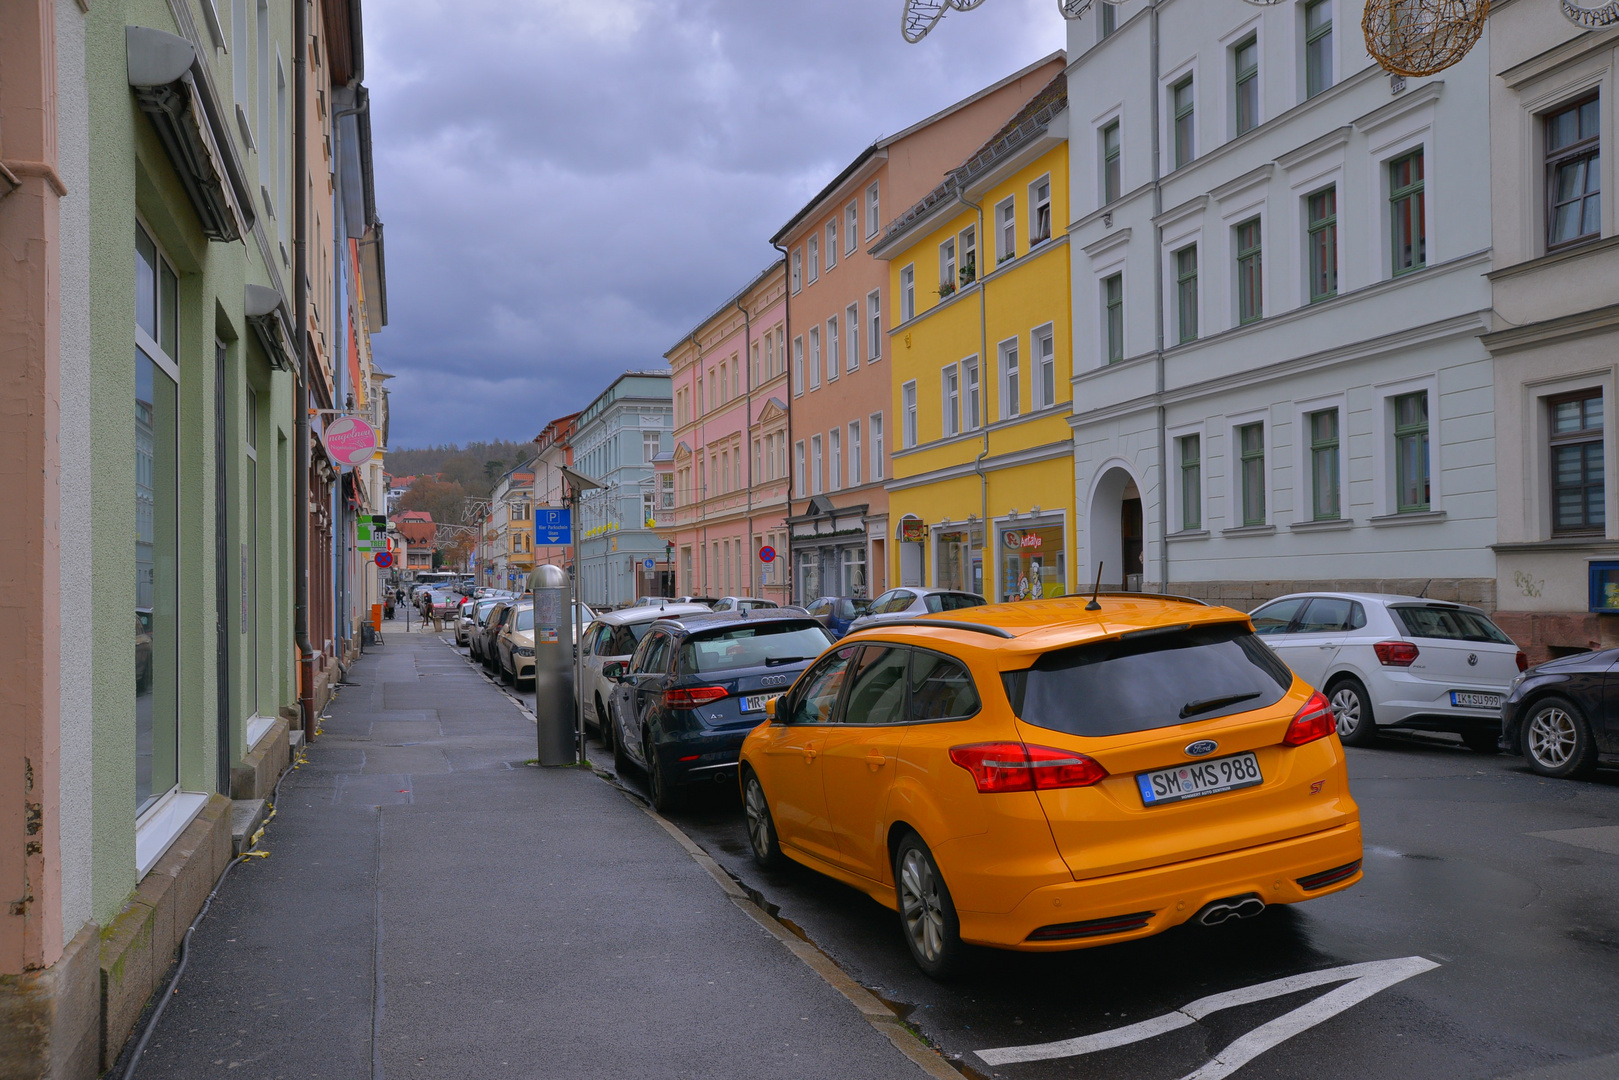 zu Silvester in Meiningen: das schöne gelbe Auto